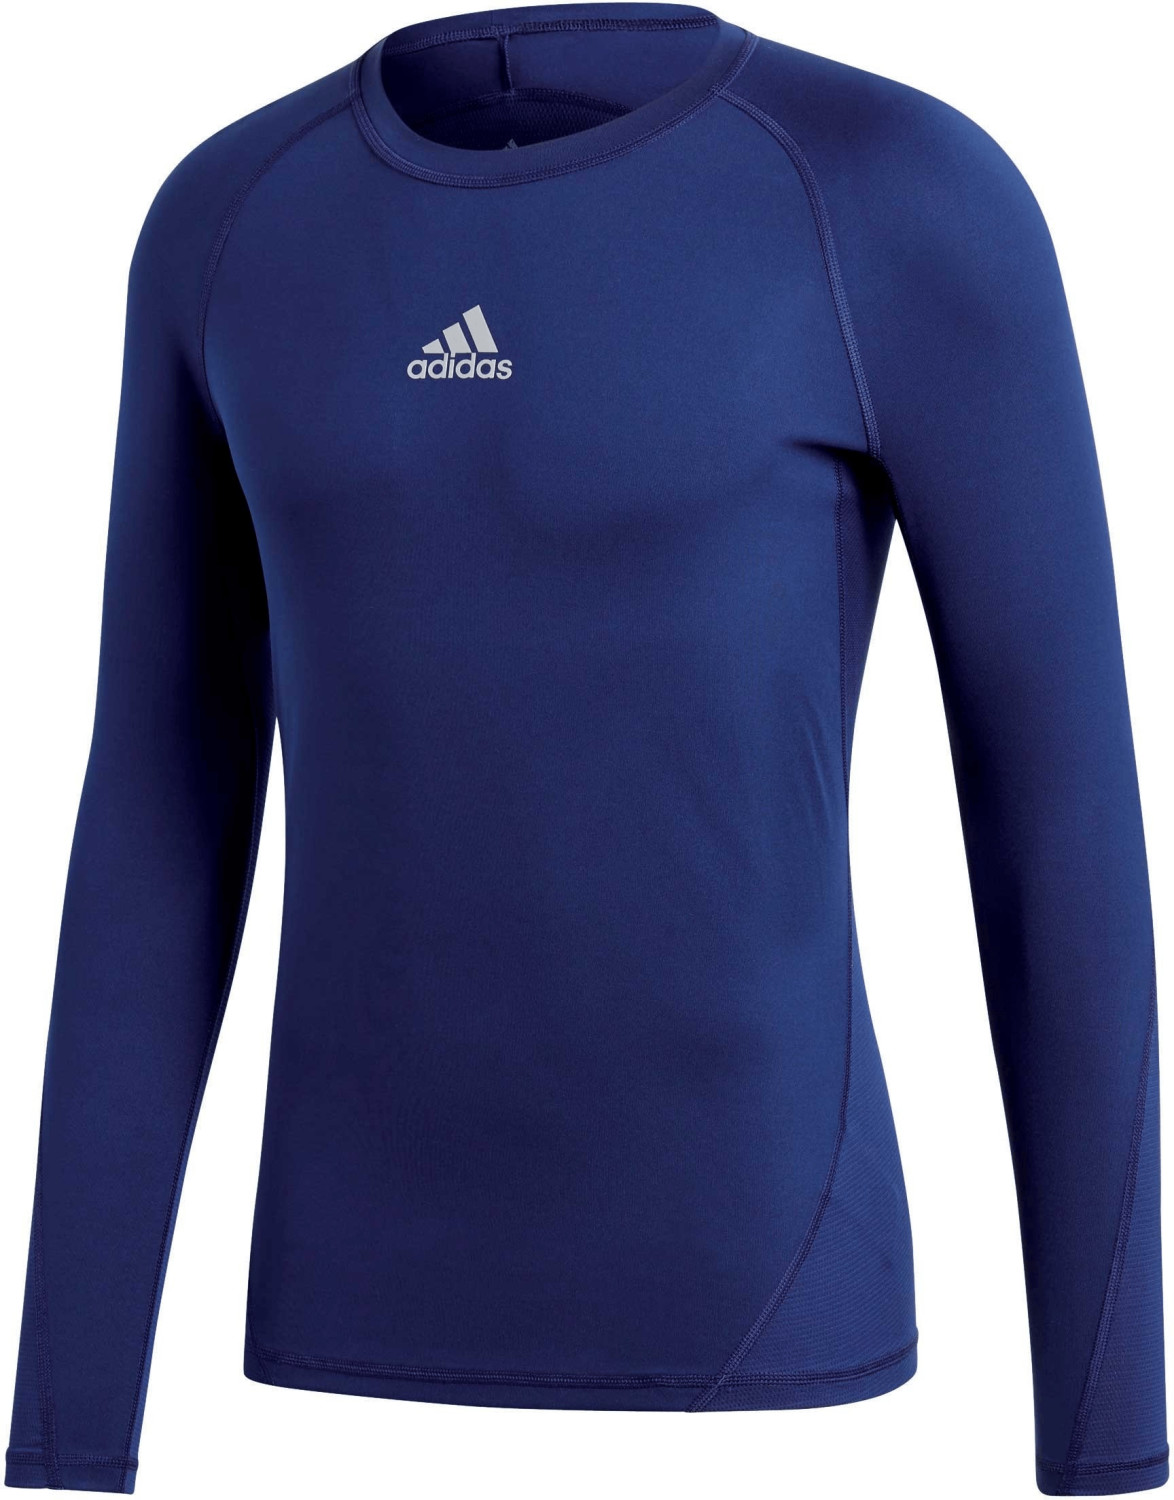 Adidas Alphaskin Longssleeve Shirt dark blue